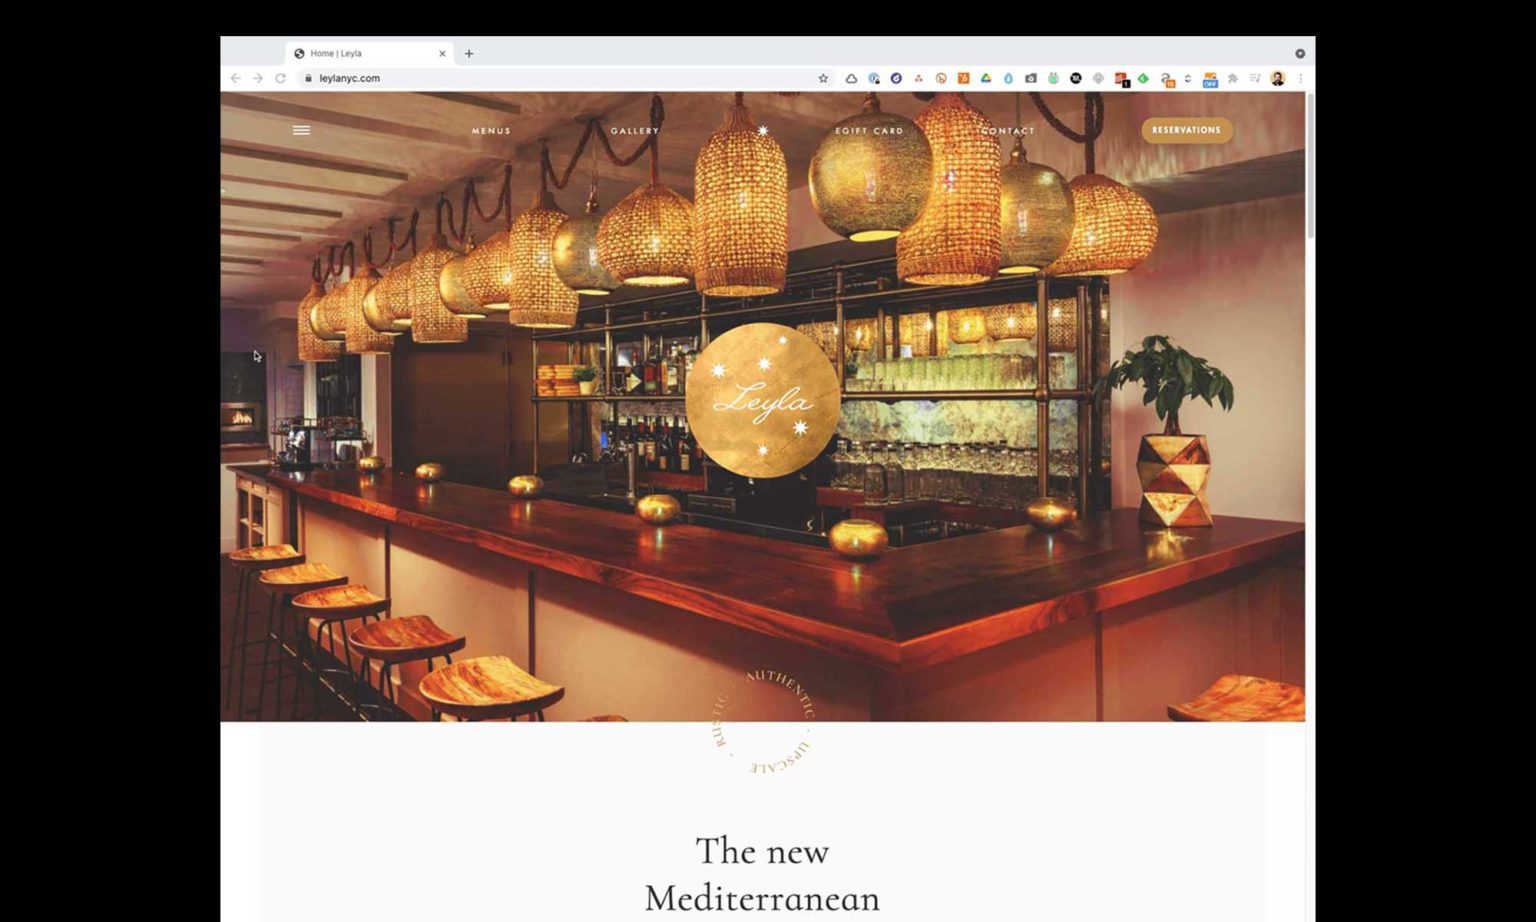 leyla-restaurant-manhattan-best-restaurant-website-design-award-1536x922-1